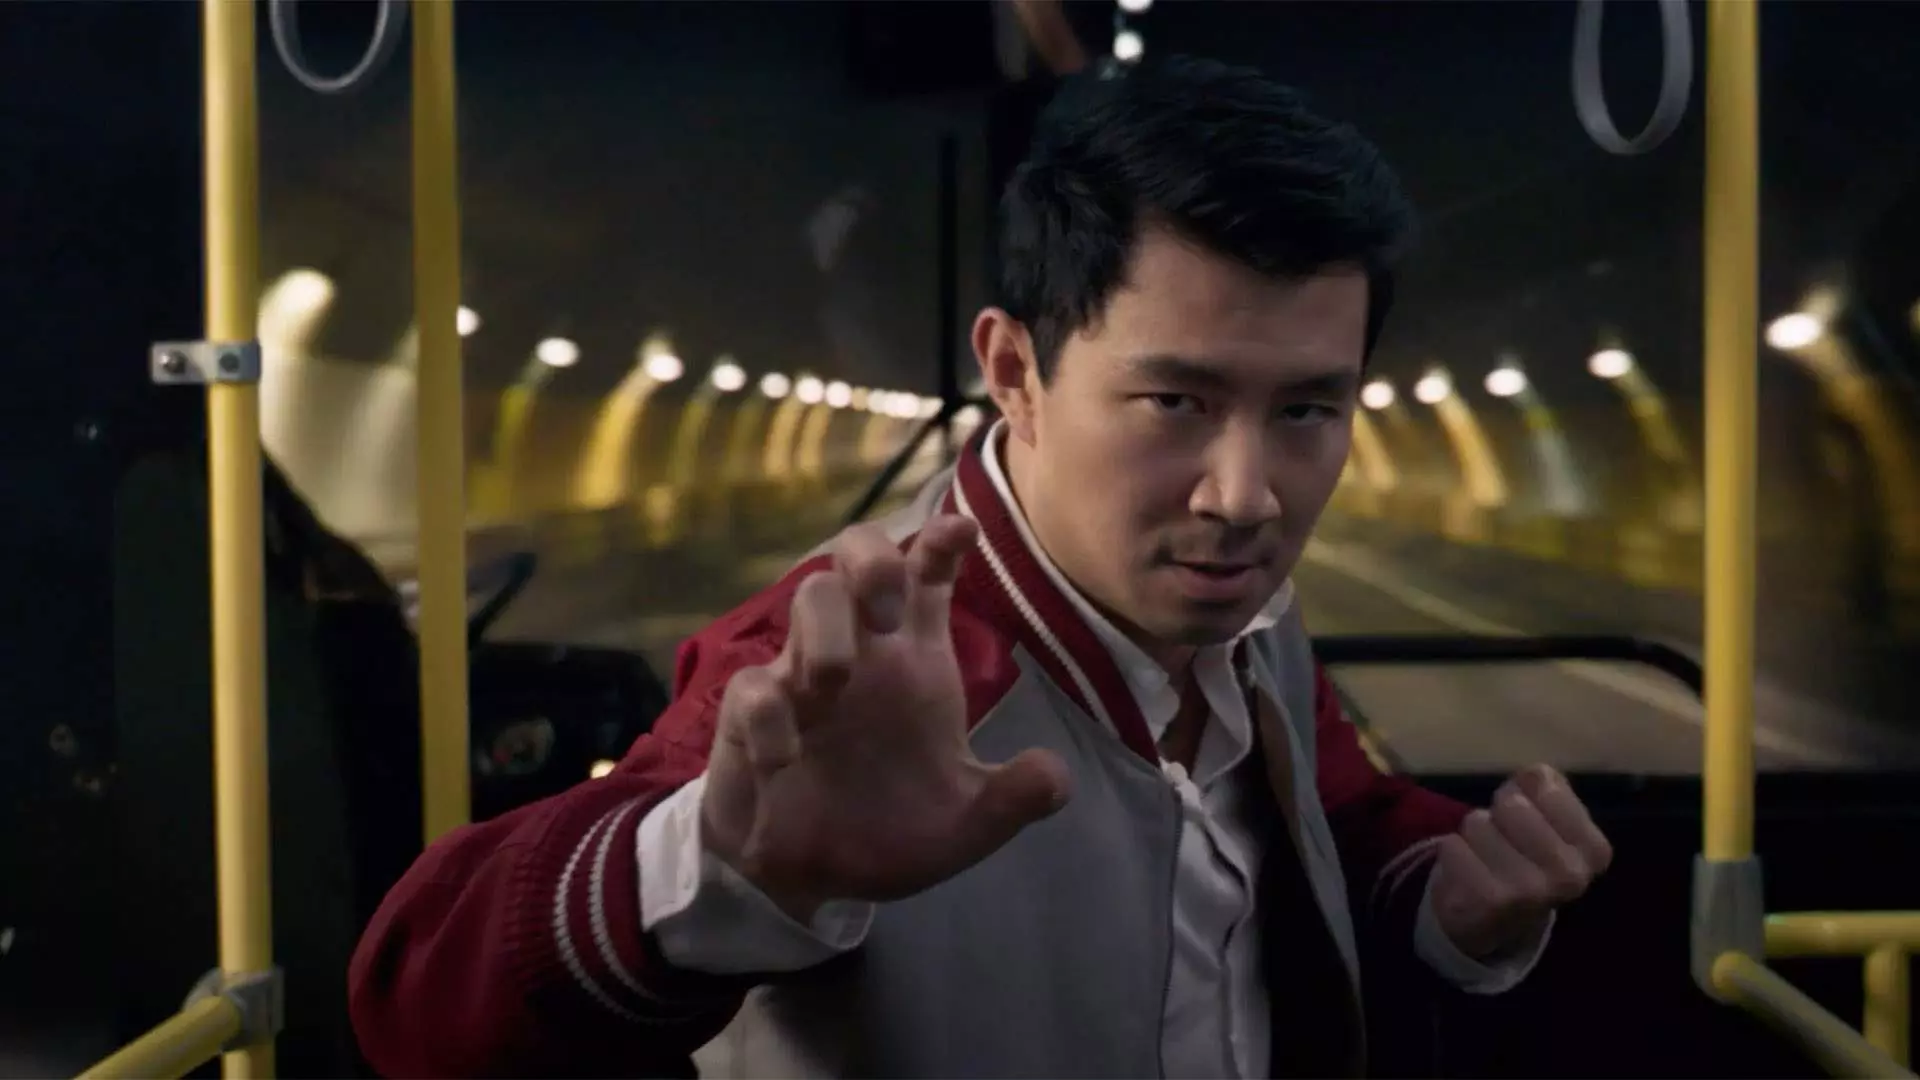 سم لیو در نقش شانگ چی در حال انجام فنون رزمی در اتوبوس در اولین تریلر فیلم Shang-Chi and the Legend of the Ten Rings